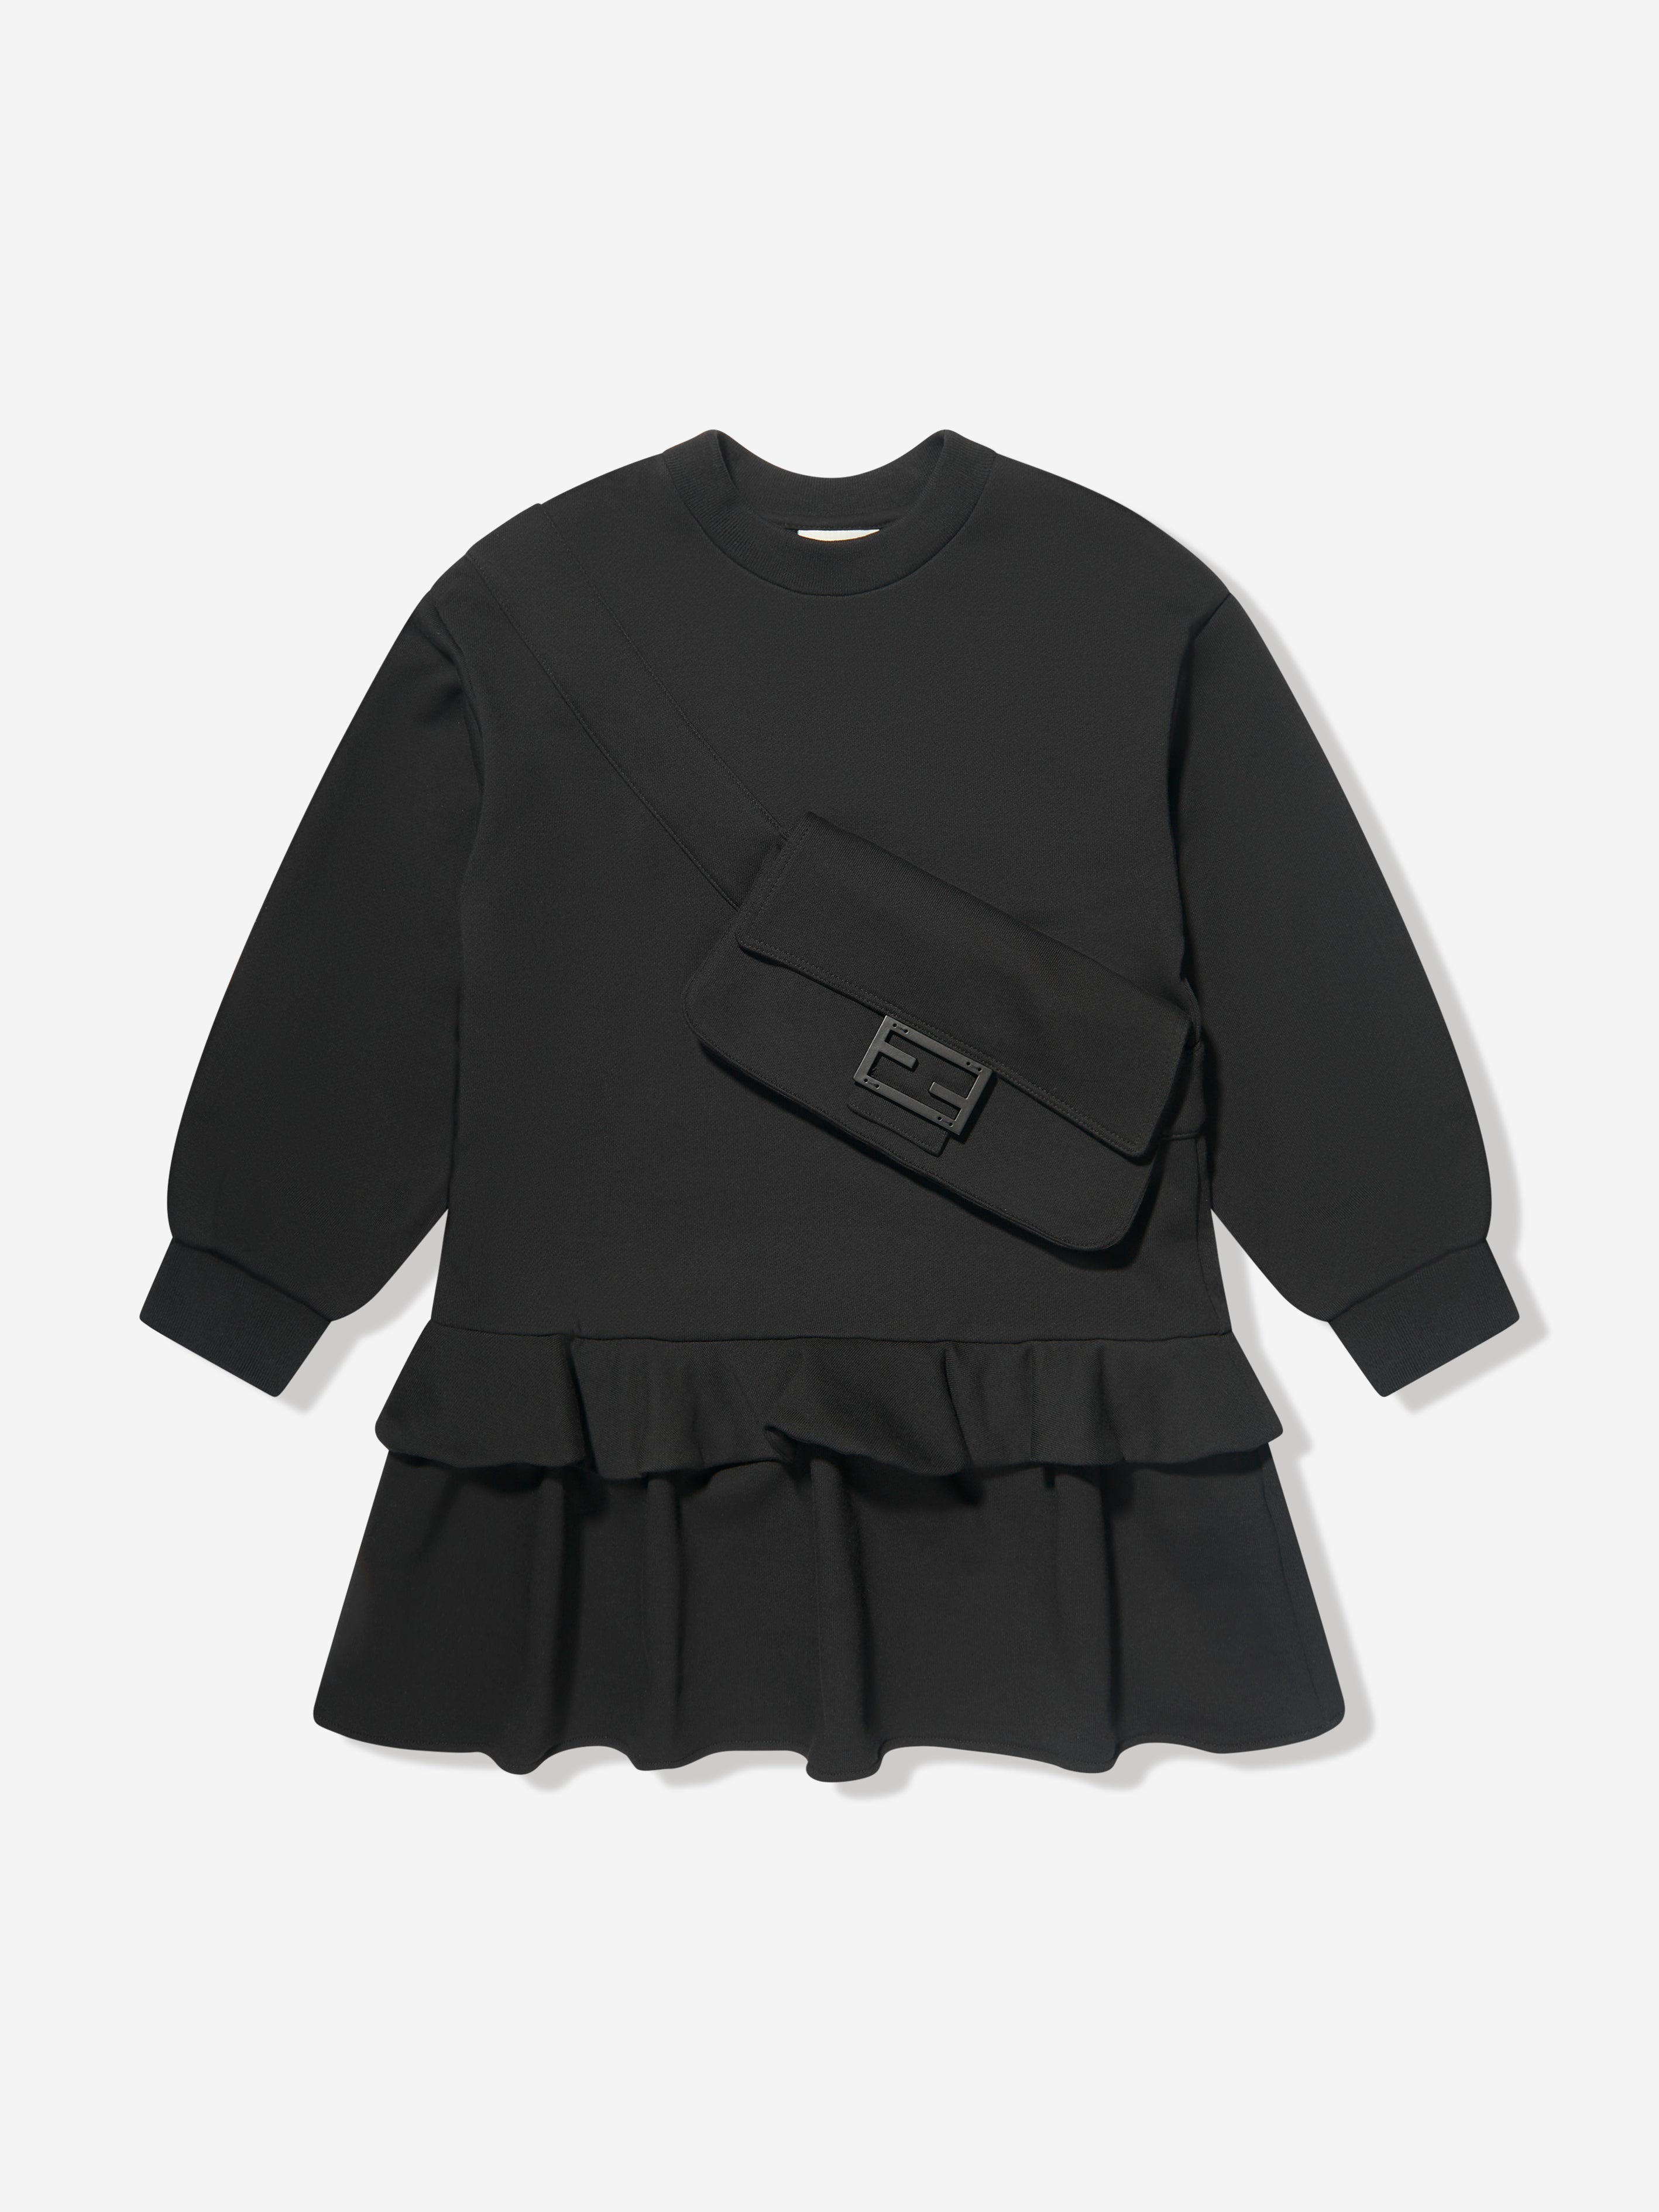 Fendi Kids' Girls Sweater Dress In Black